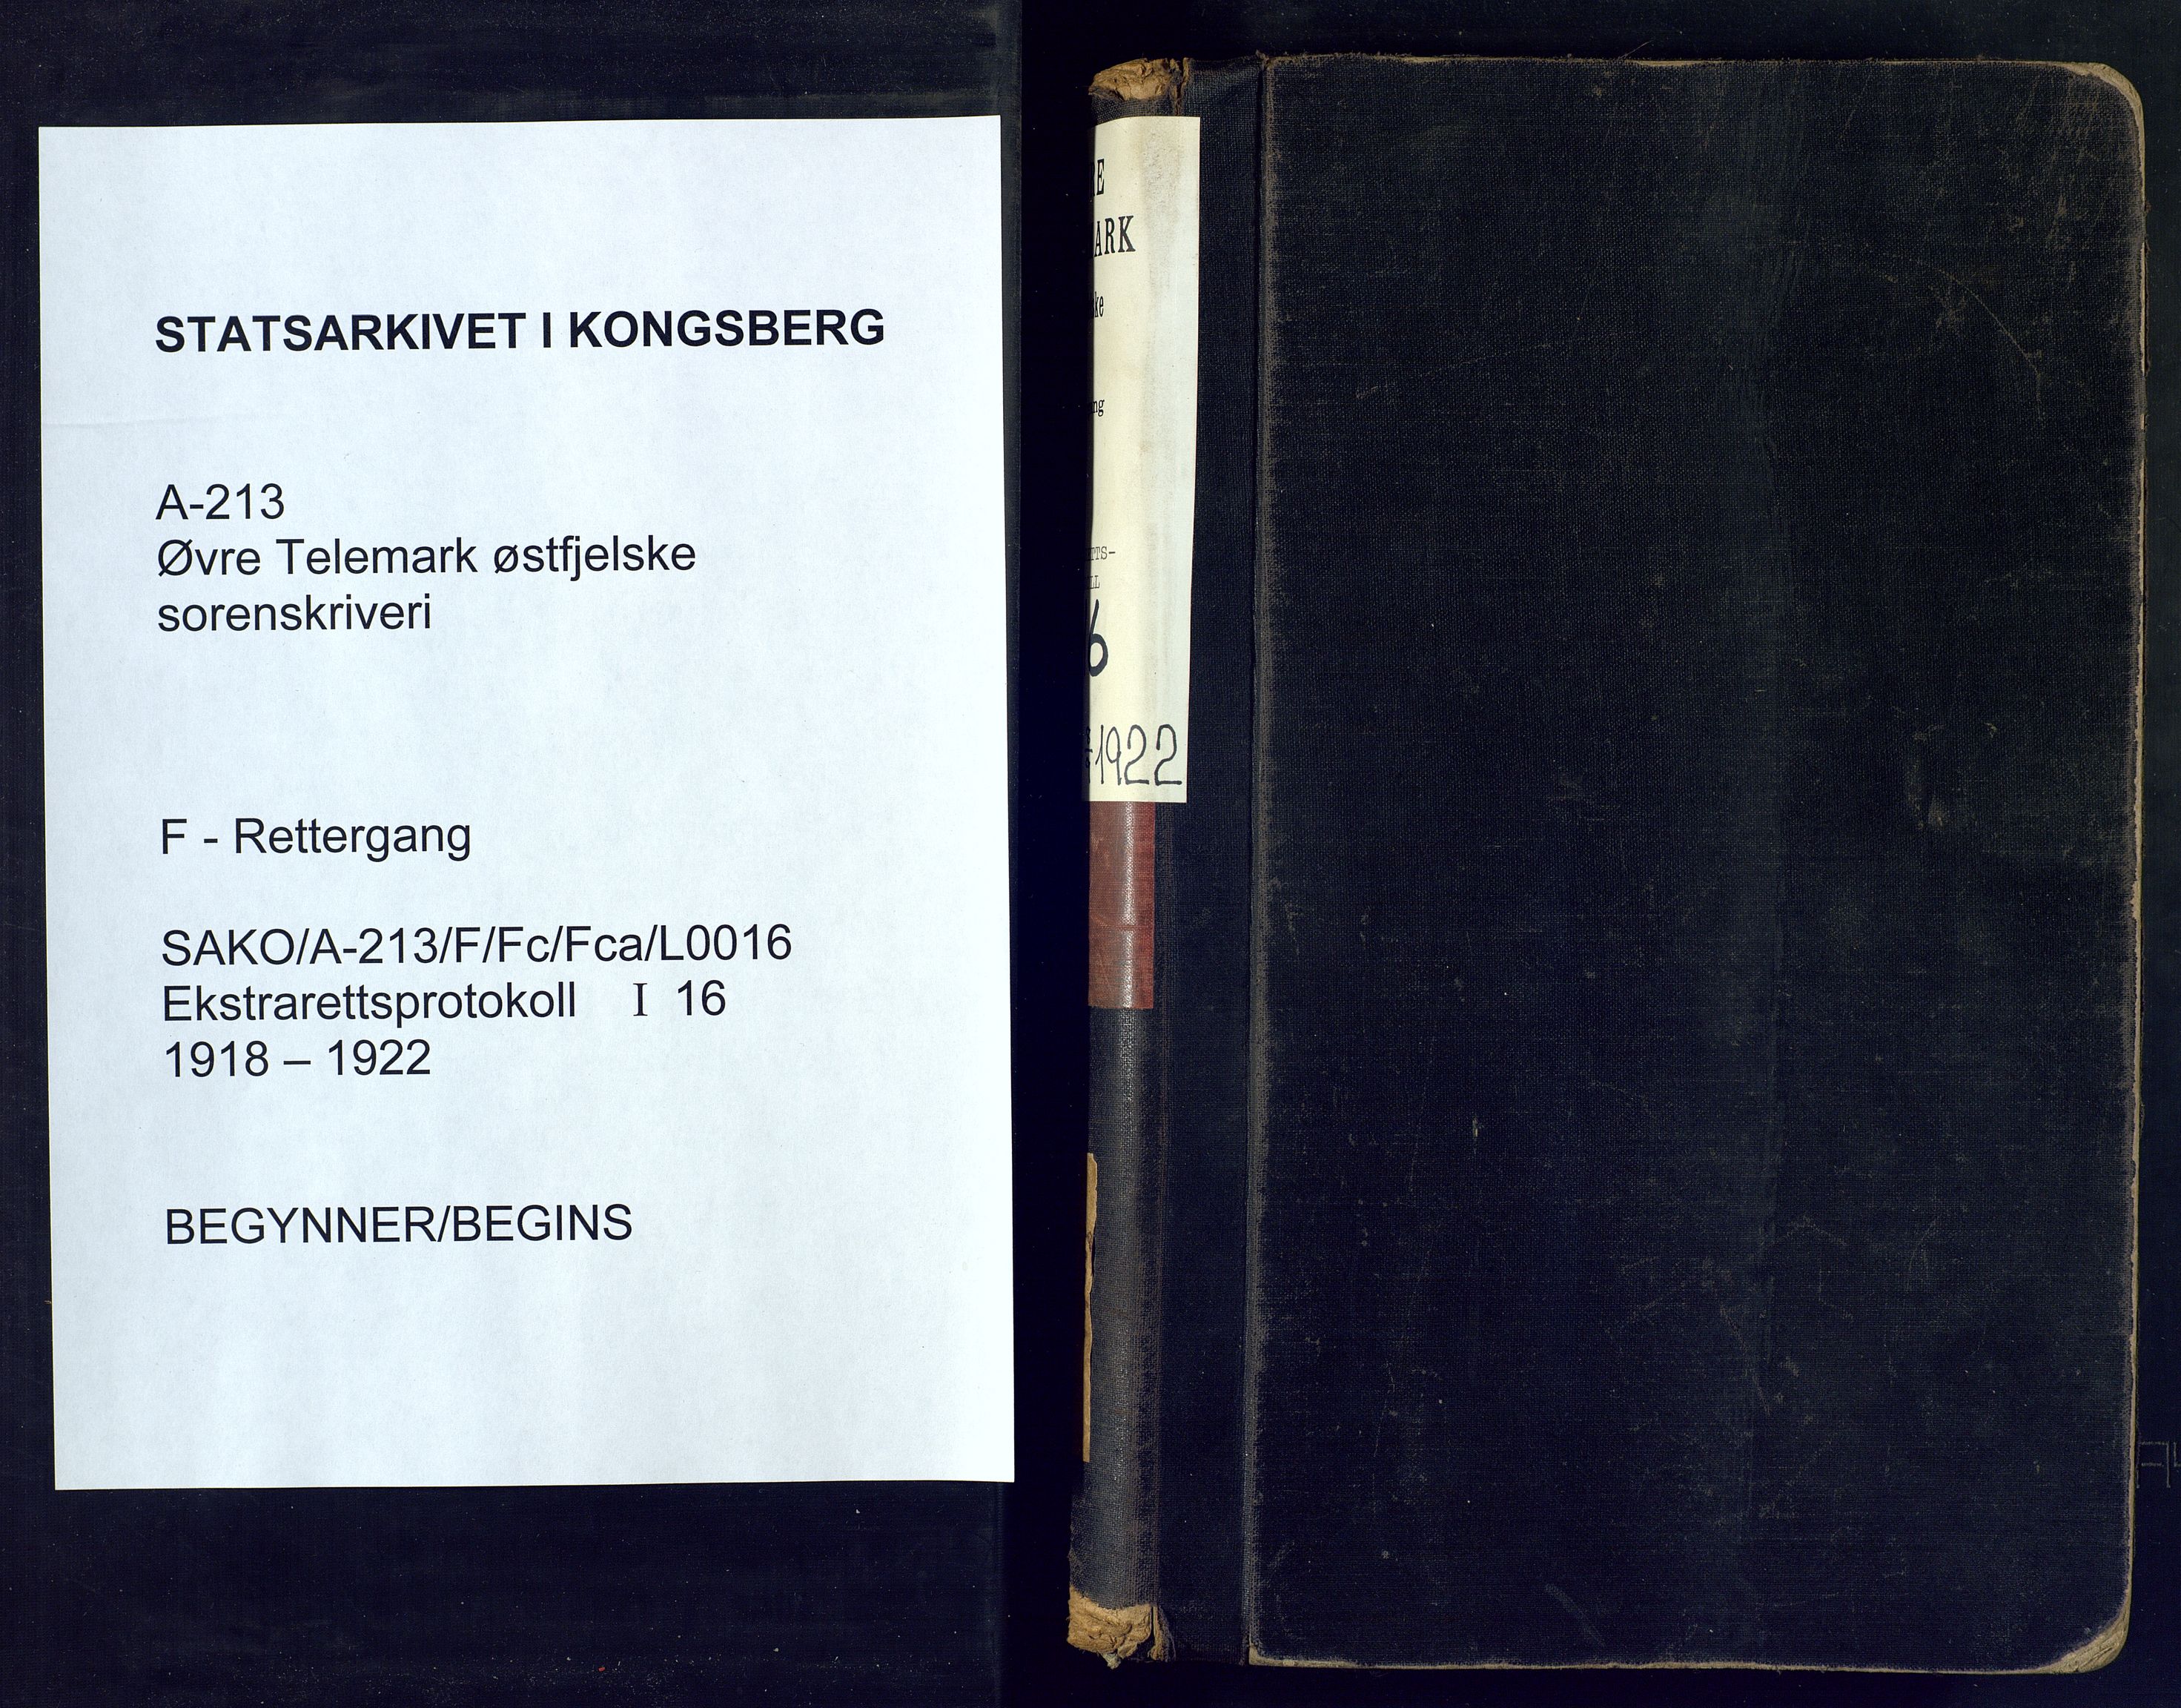 Øvre Telemark østfjelske sorenskriveri, SAKO/A-213/F/Fc/Fca/L0016: Ekstrarettsprotokoll, sivile saker, 1918-1922